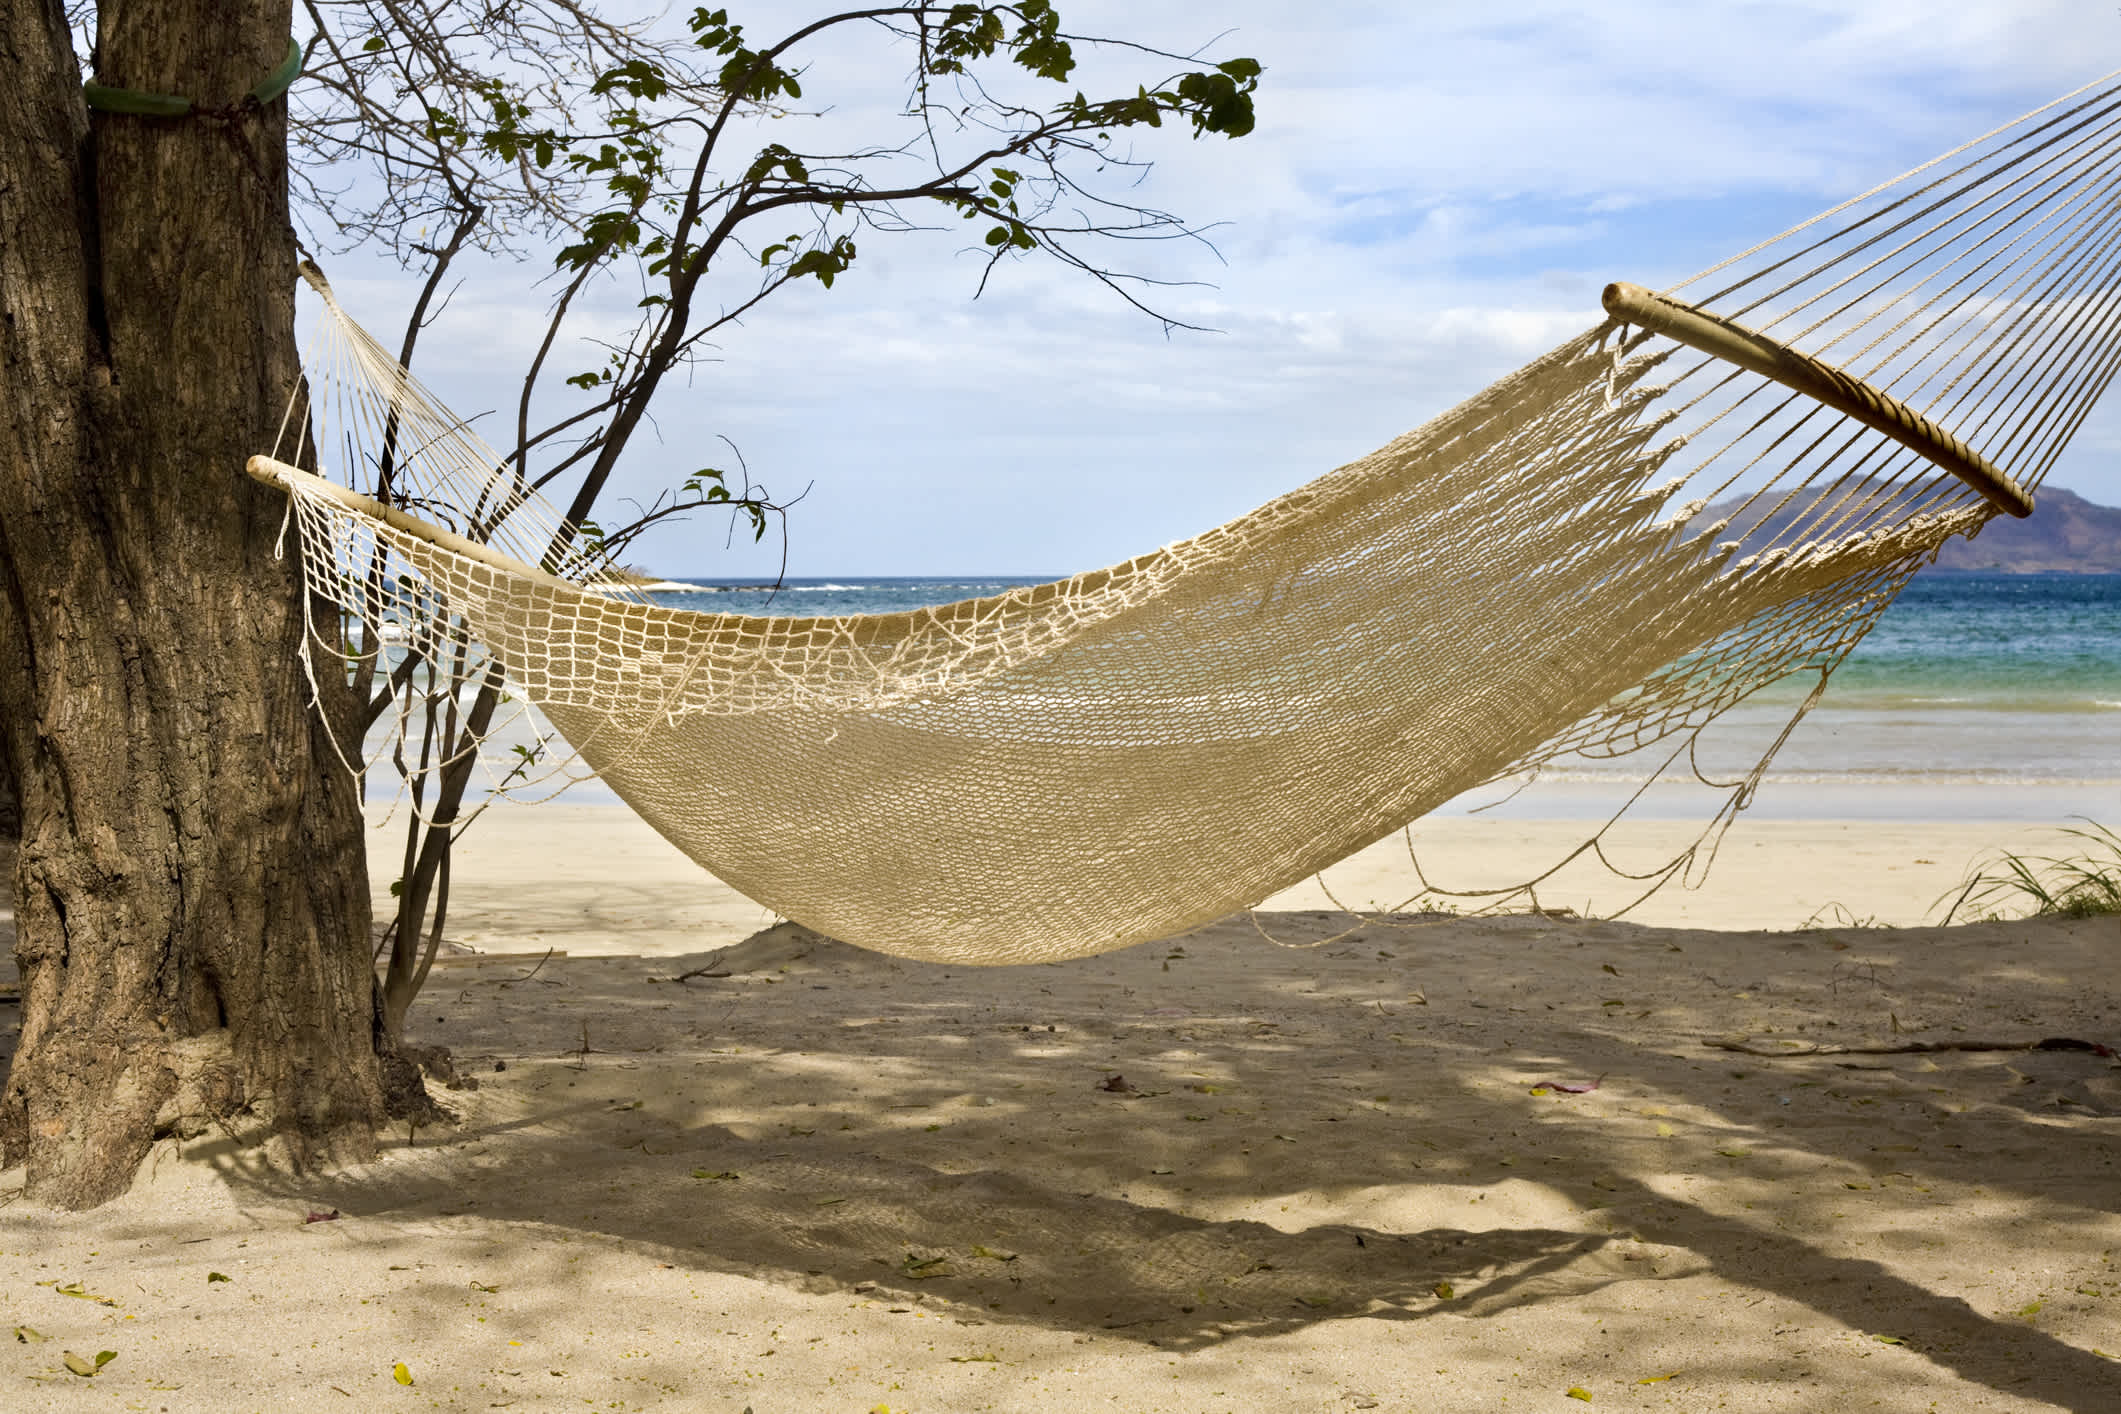 Hamac sur la plage de Tamarindo, Costa Rica.

